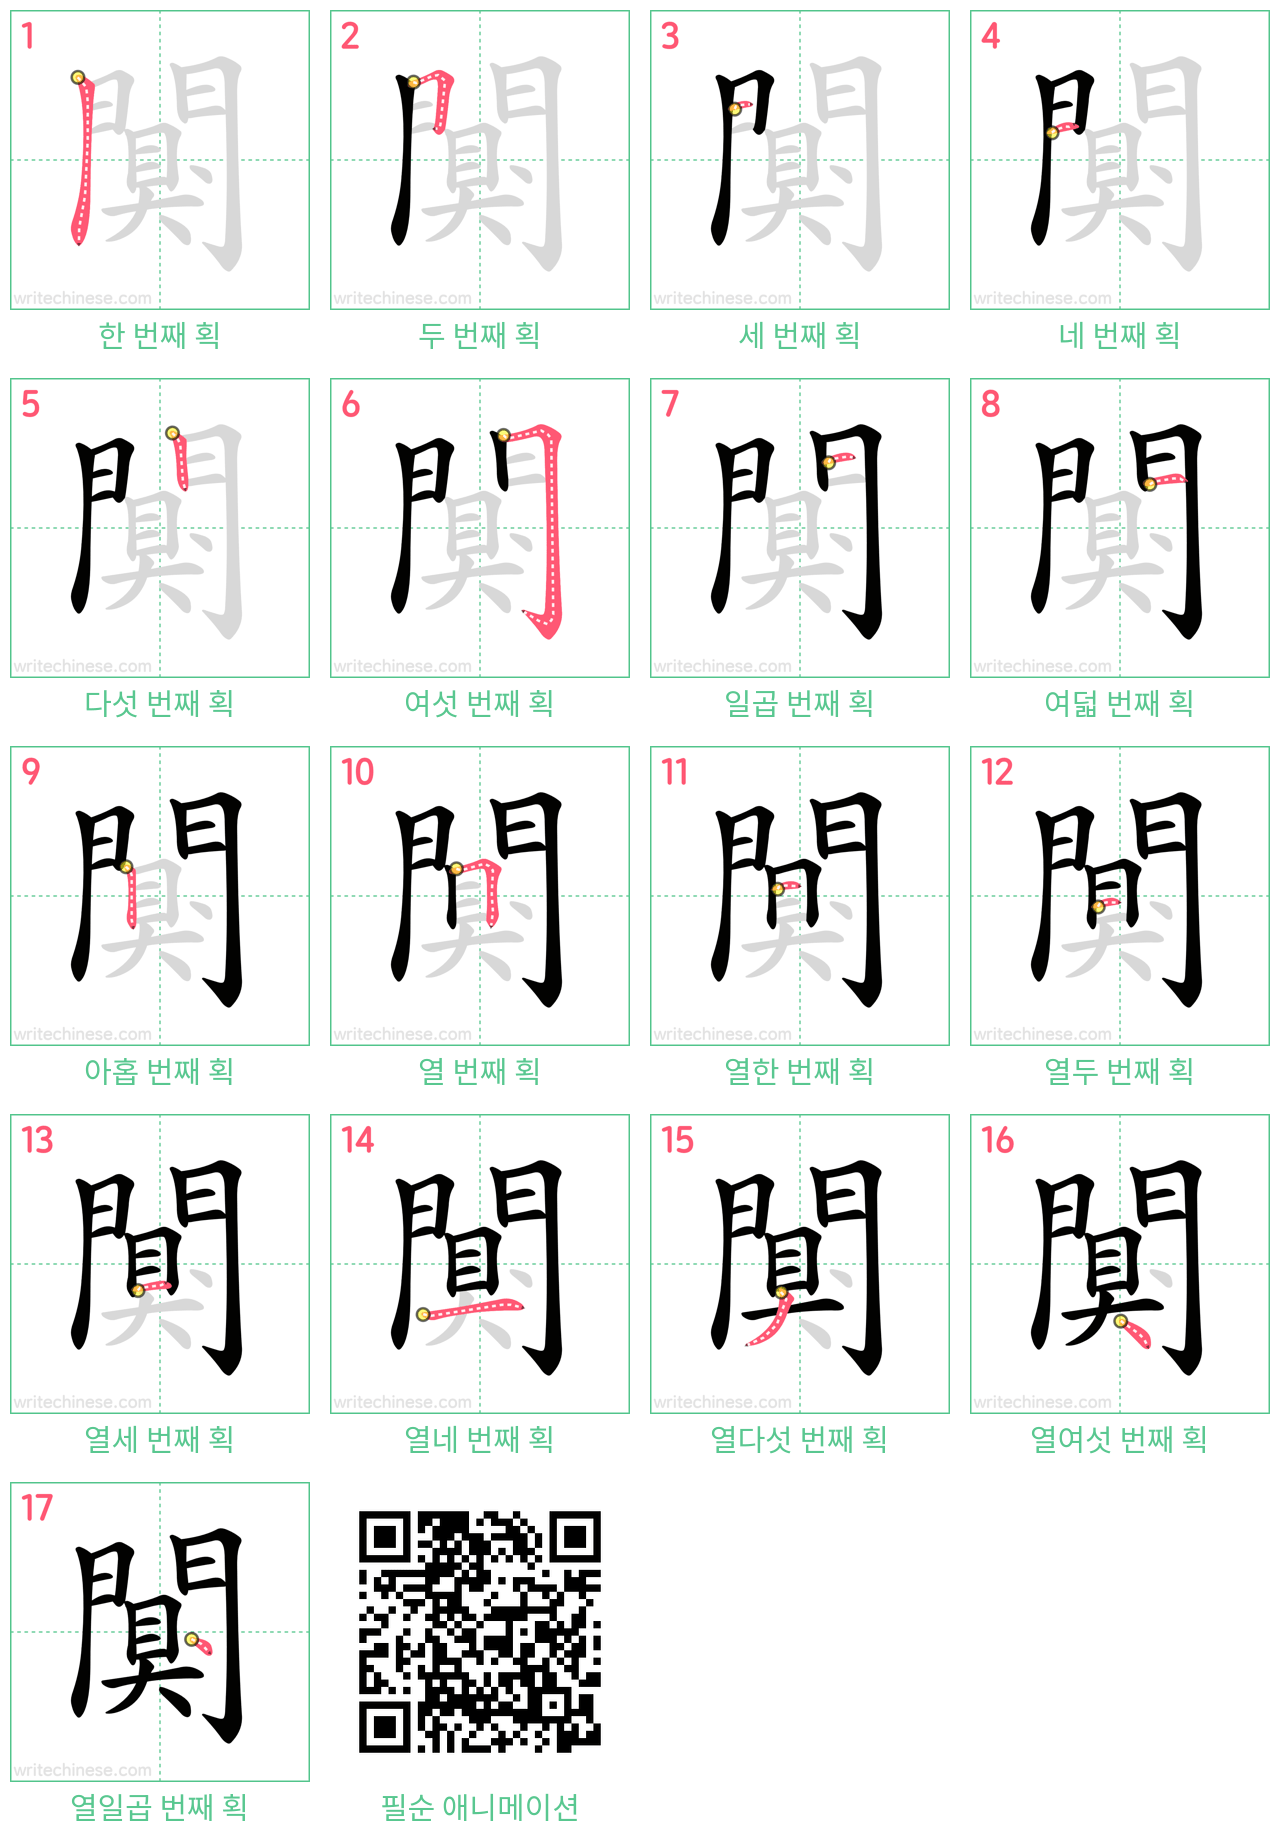 闃 step-by-step stroke order diagrams